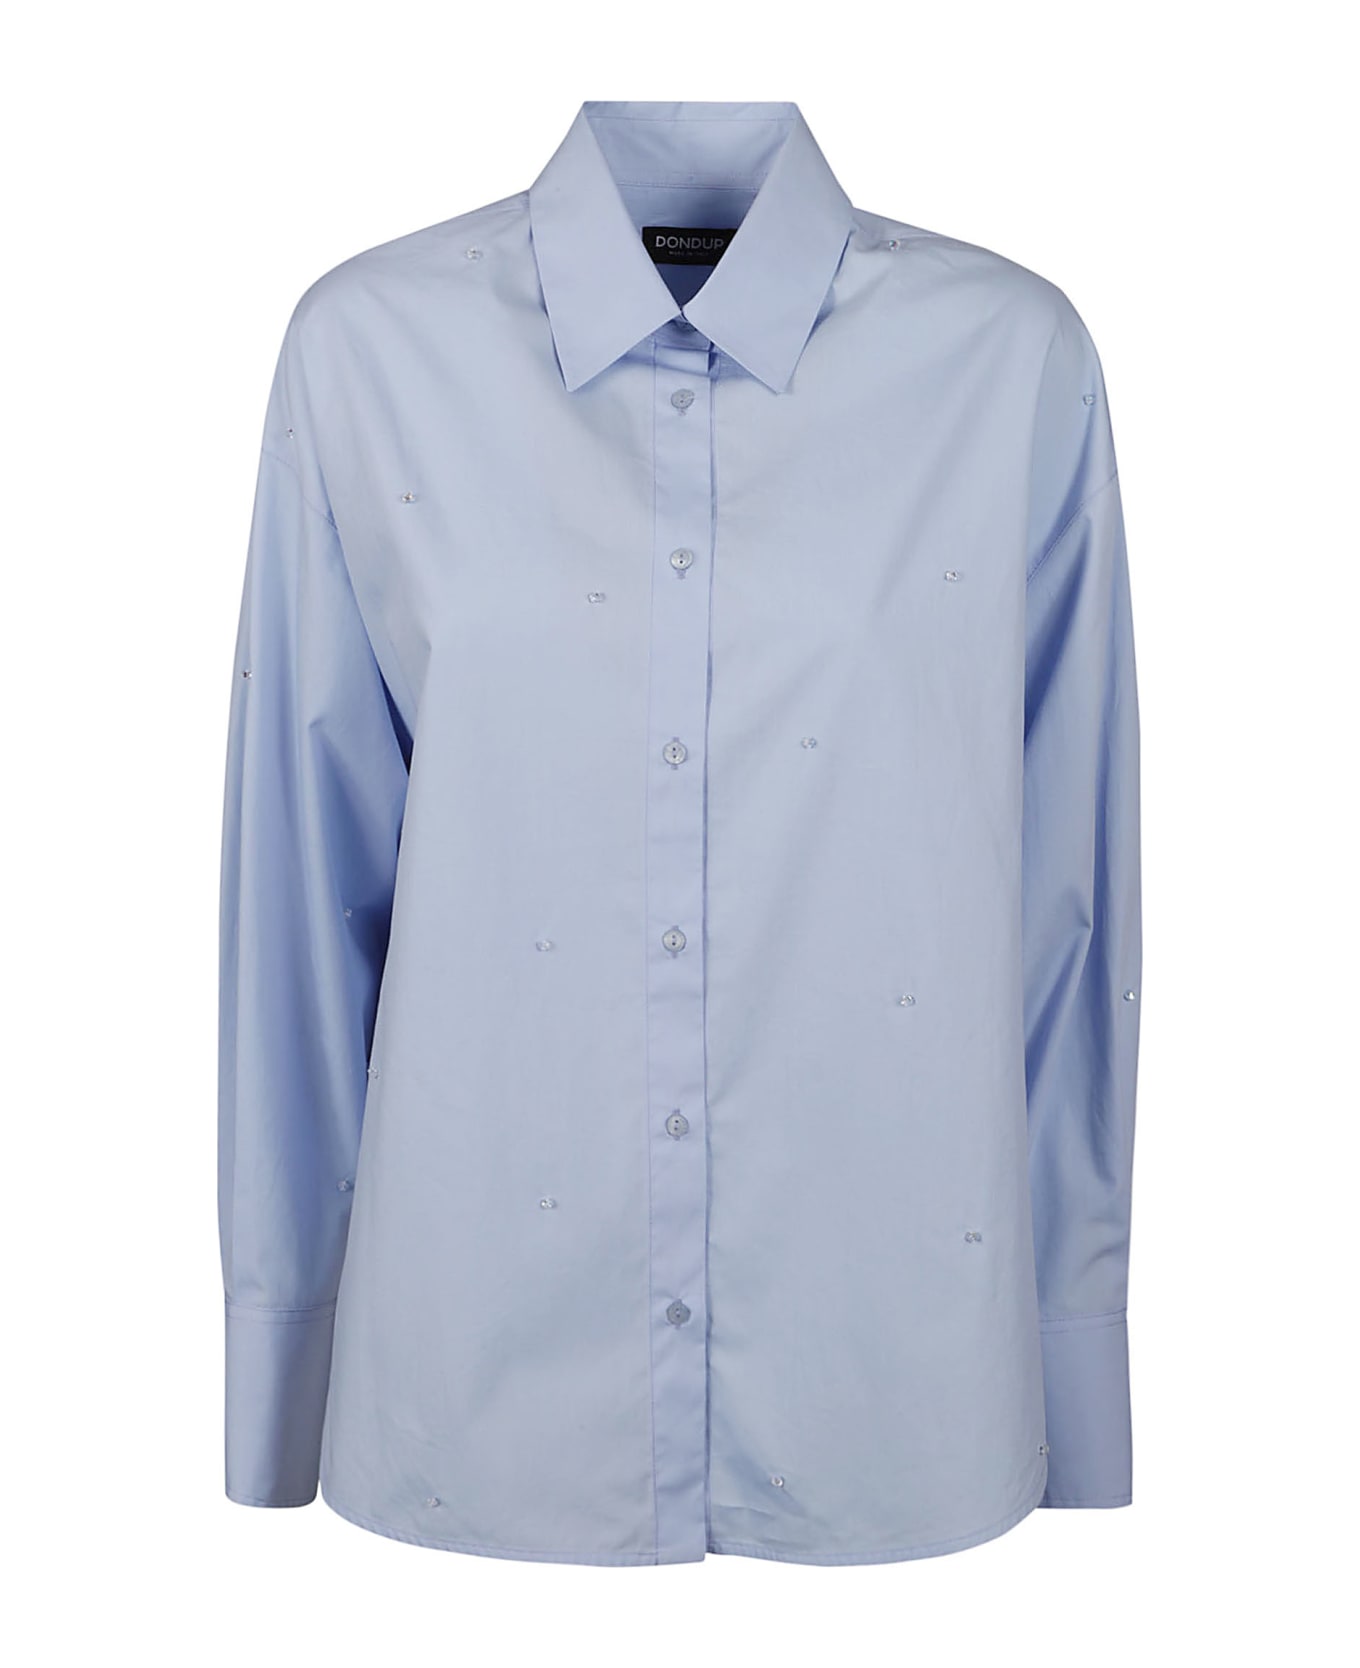 Dondup Long-sleeved Shirt - Azure